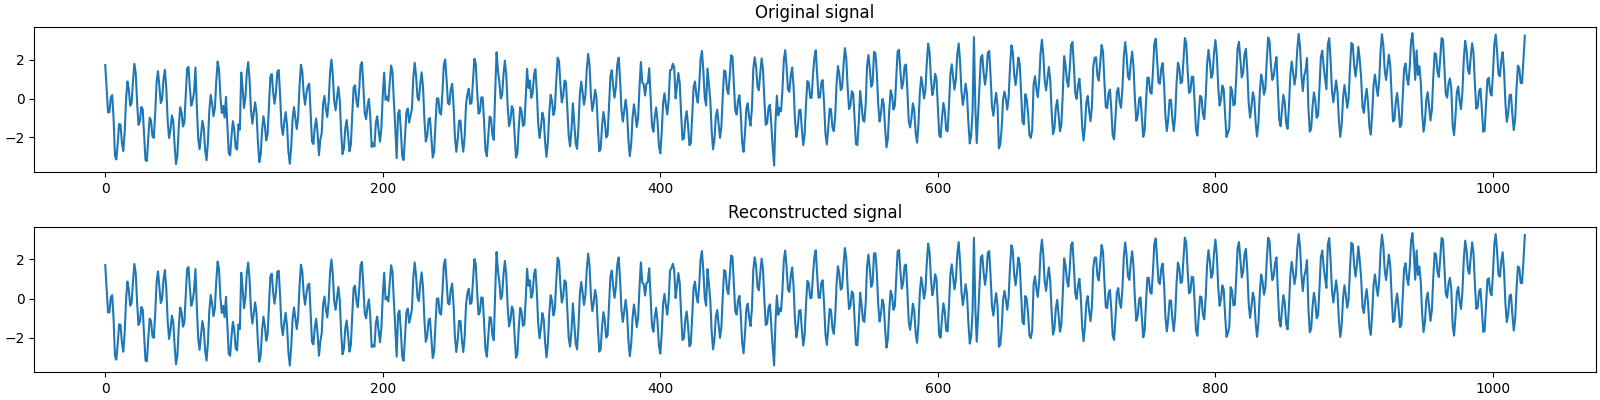 Original signal, Reconstructed signal